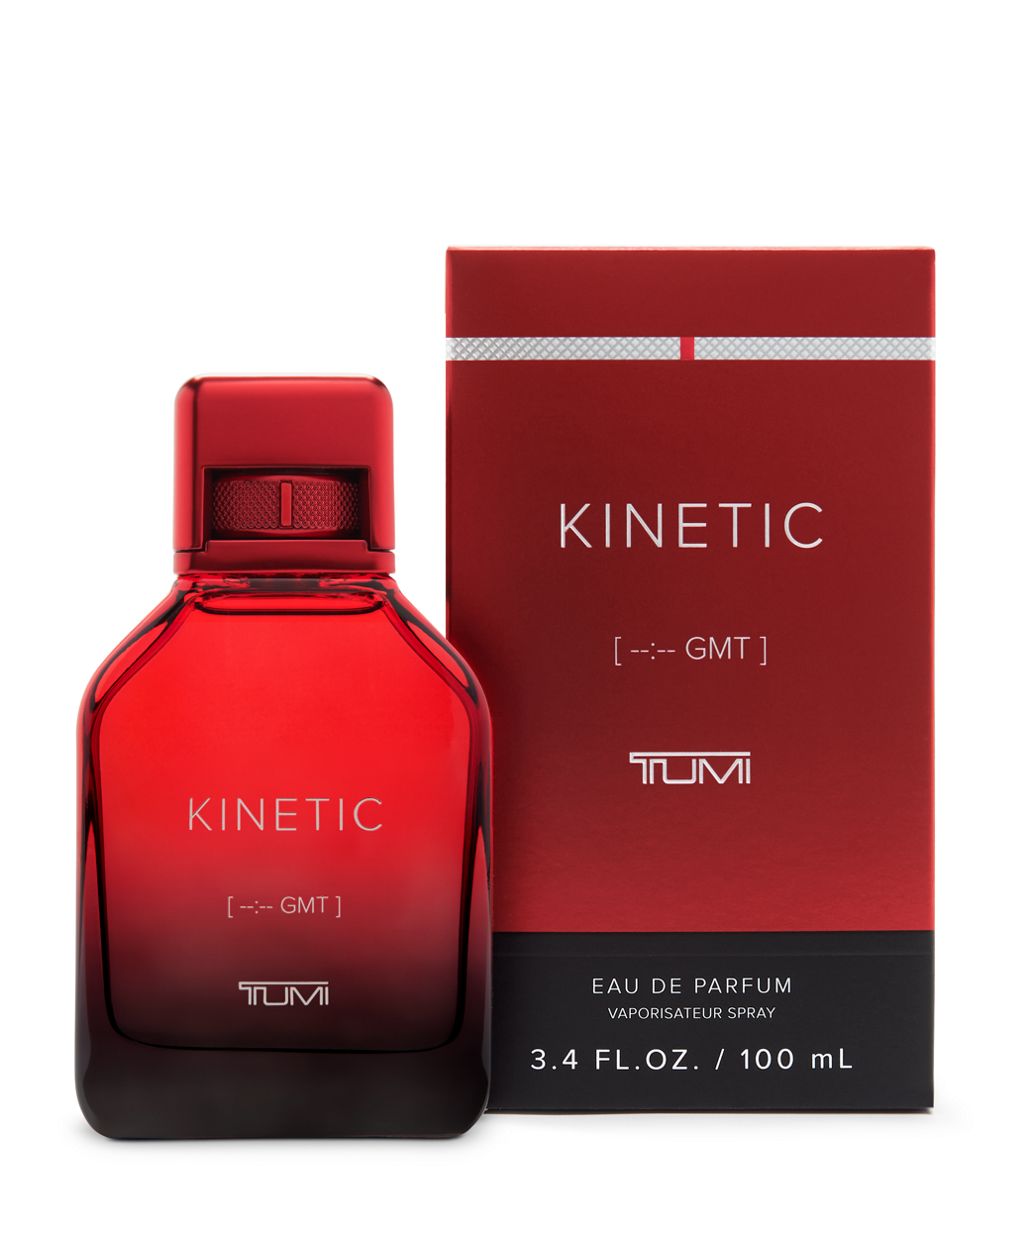 Kinetic [--:-- GMT] TUMI Eau De Parfum 3.4 oz